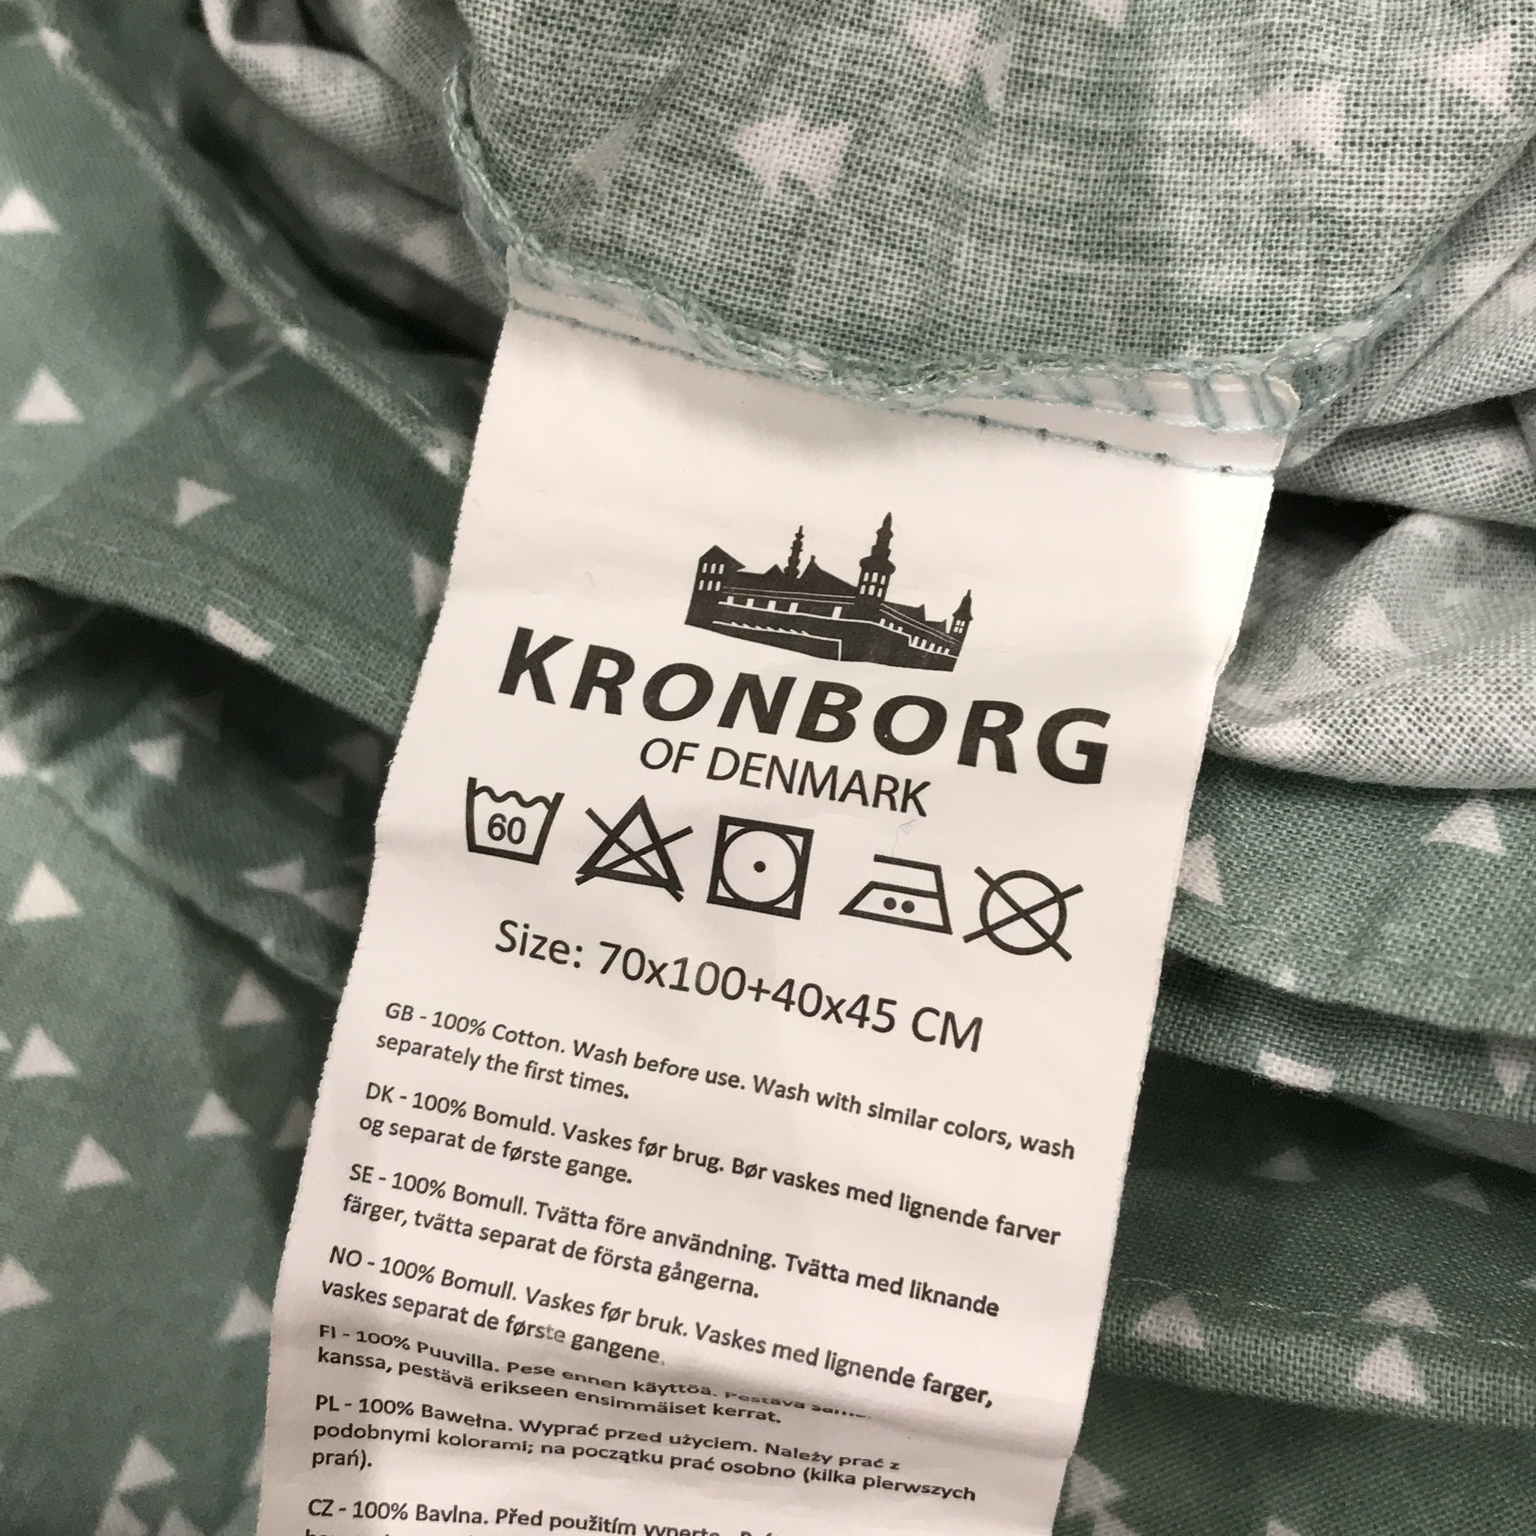 Kronborg of Denmark